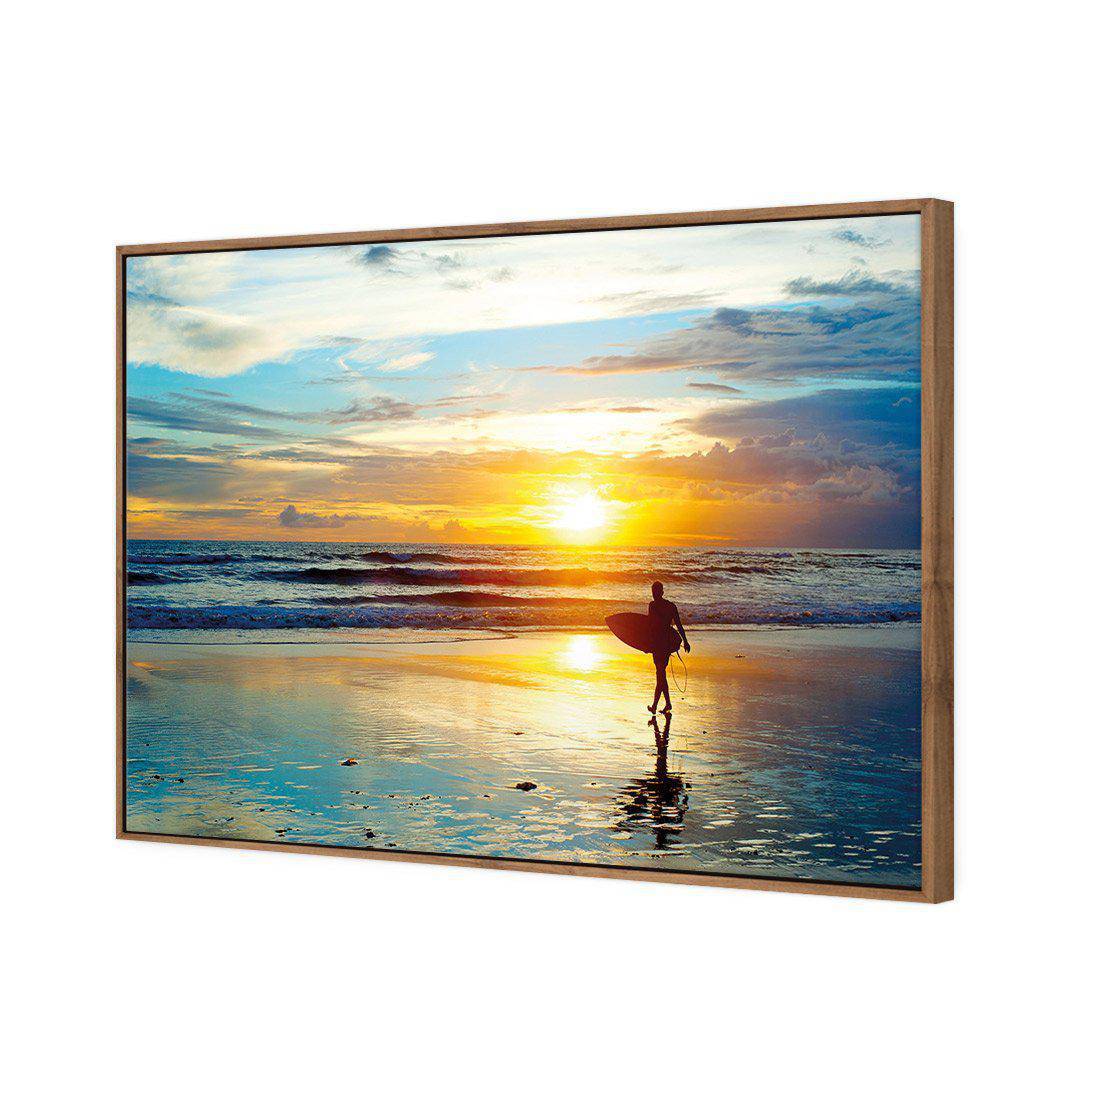 Sunset Surf Canvas Art-Canvas-Wall Art Designs-45x30cm-Canvas - Natural Frame-Wall Art Designs